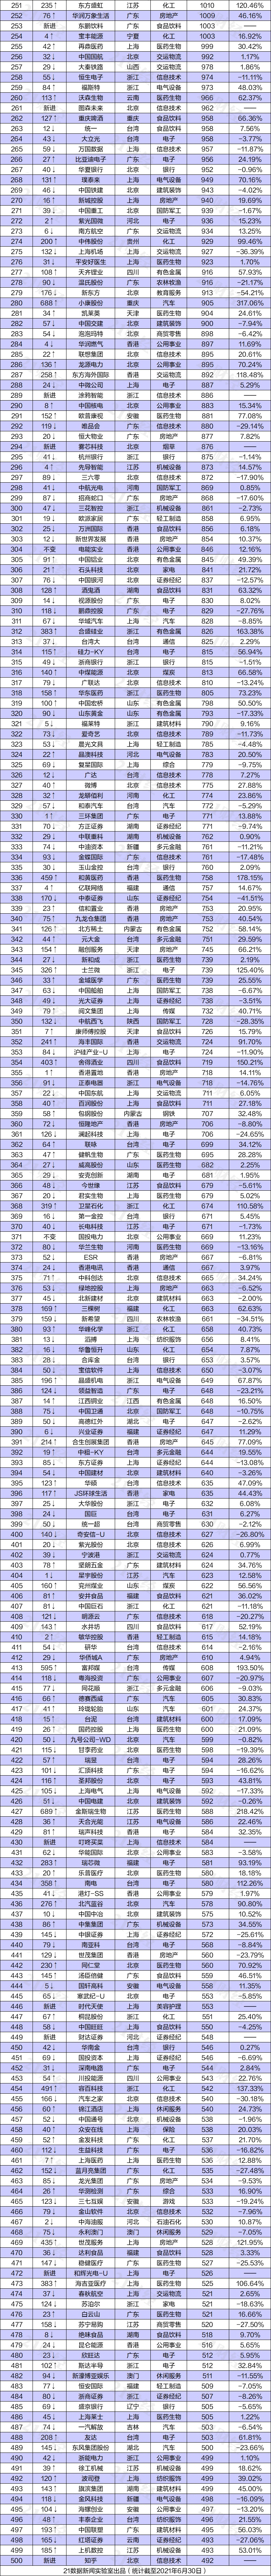 中国市值排行榜_2021年上半年中国上市企业市值排行榜TOP500(图)